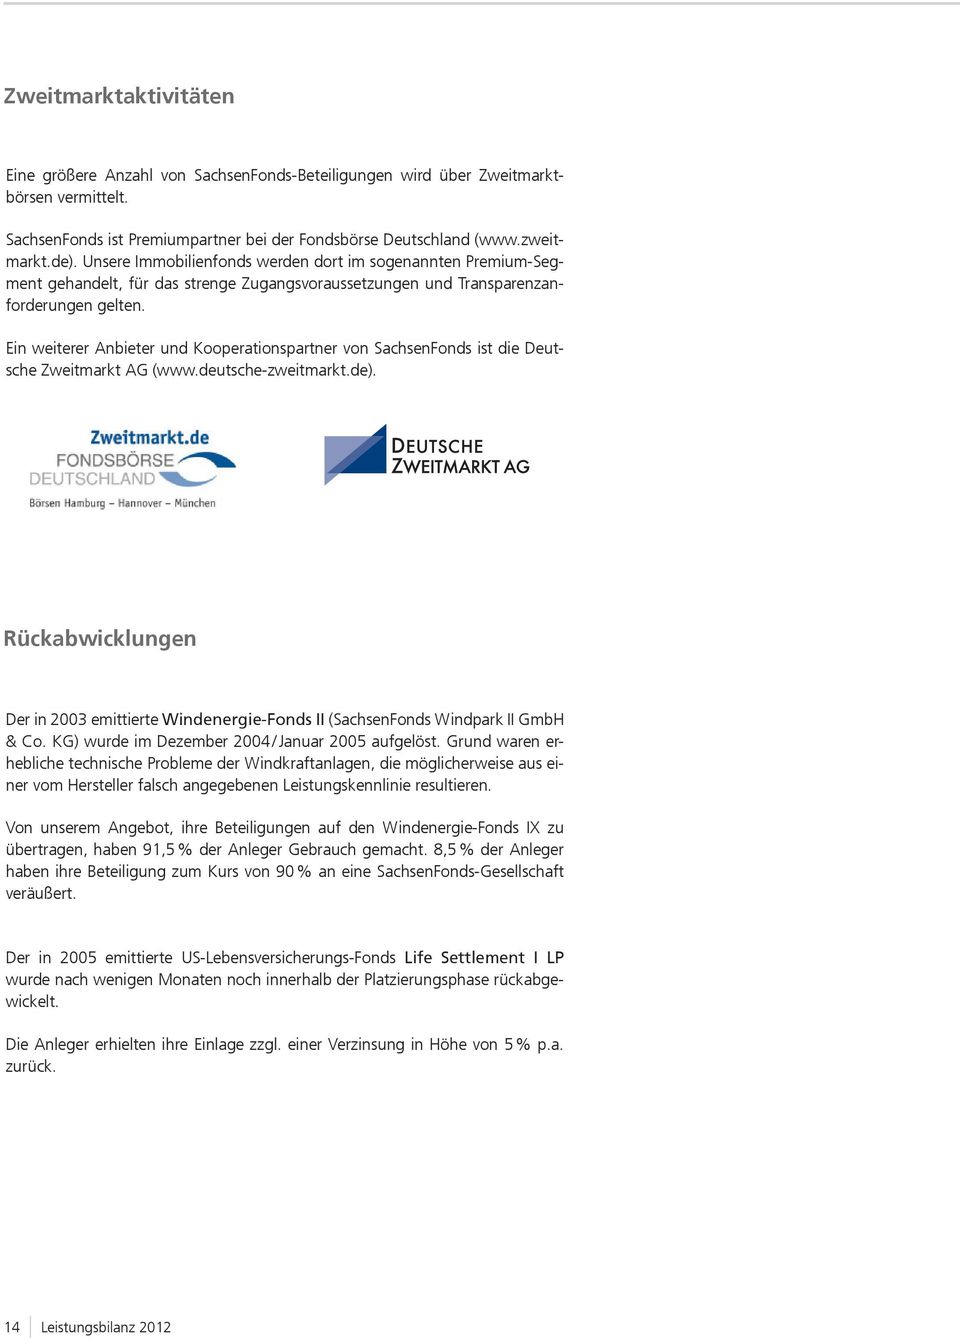 Ein weiterer Anbieter und Kooperationspartner von SachsenFonds ist die Deutsche Zweitmarkt AG (www.deutsche-zweitmarkt.de).